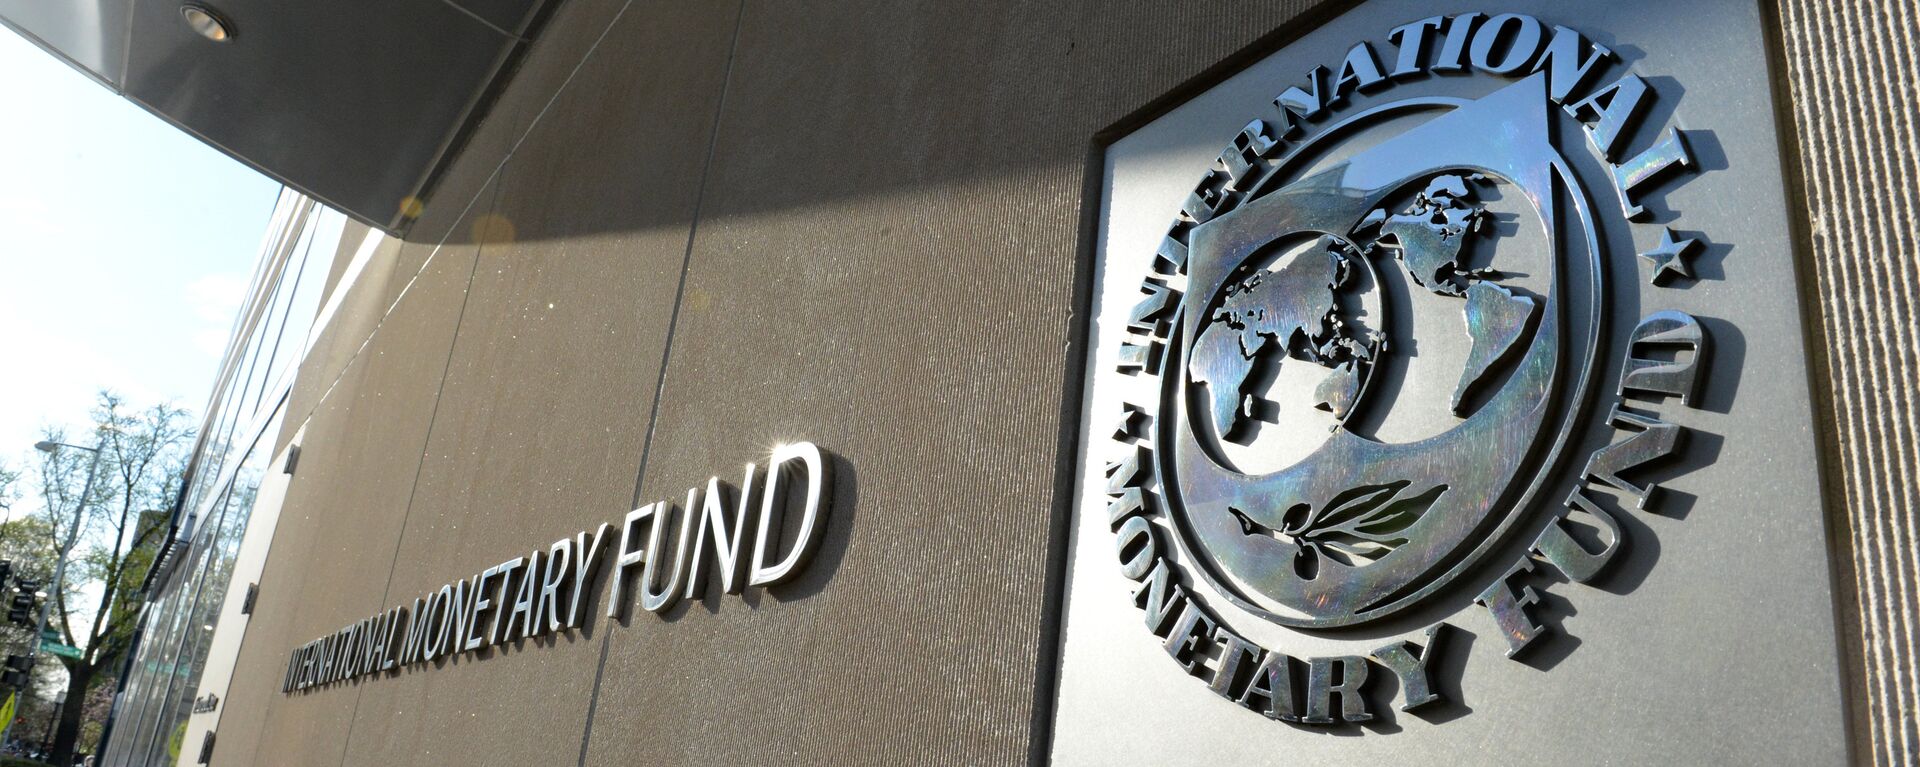 Табличка с логотипом Международного валютного фонда на стене здания МВФ - Sputnik Latvija, 1920, 22.03.2021